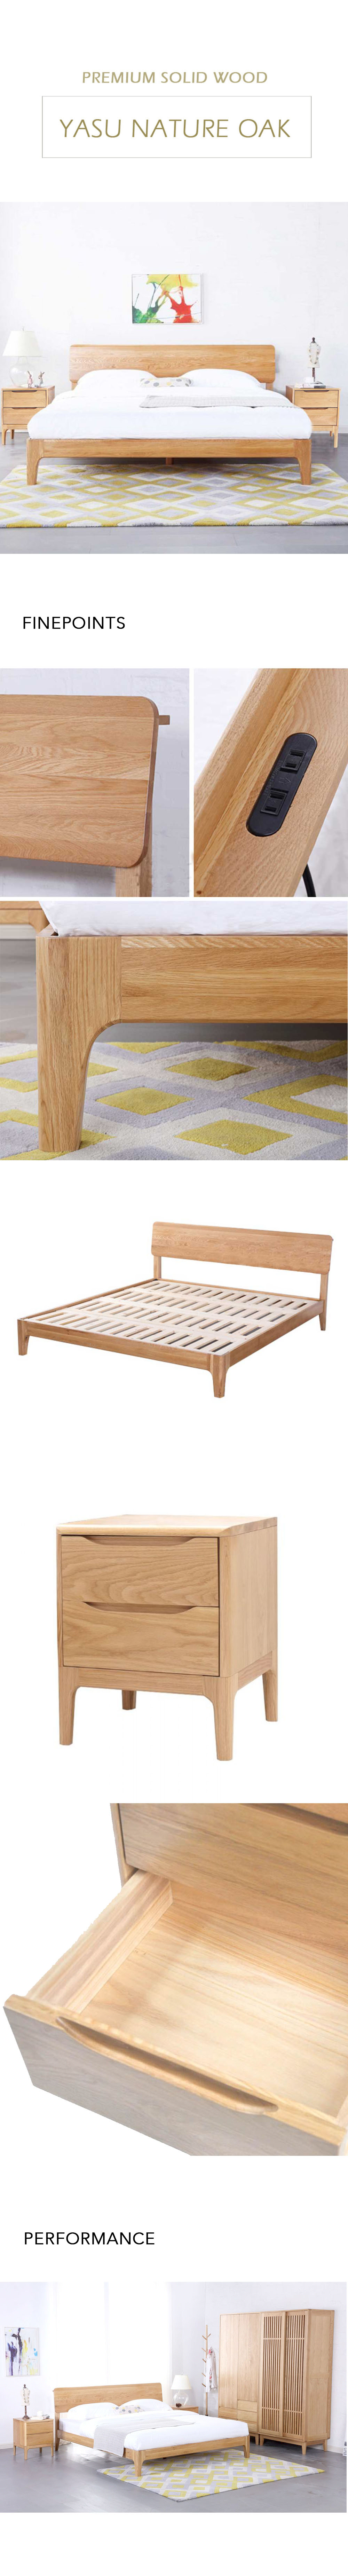 Yasu Nature Solid Oak Smart Bed Frame and 2 Minimalist Bedside Tables Set